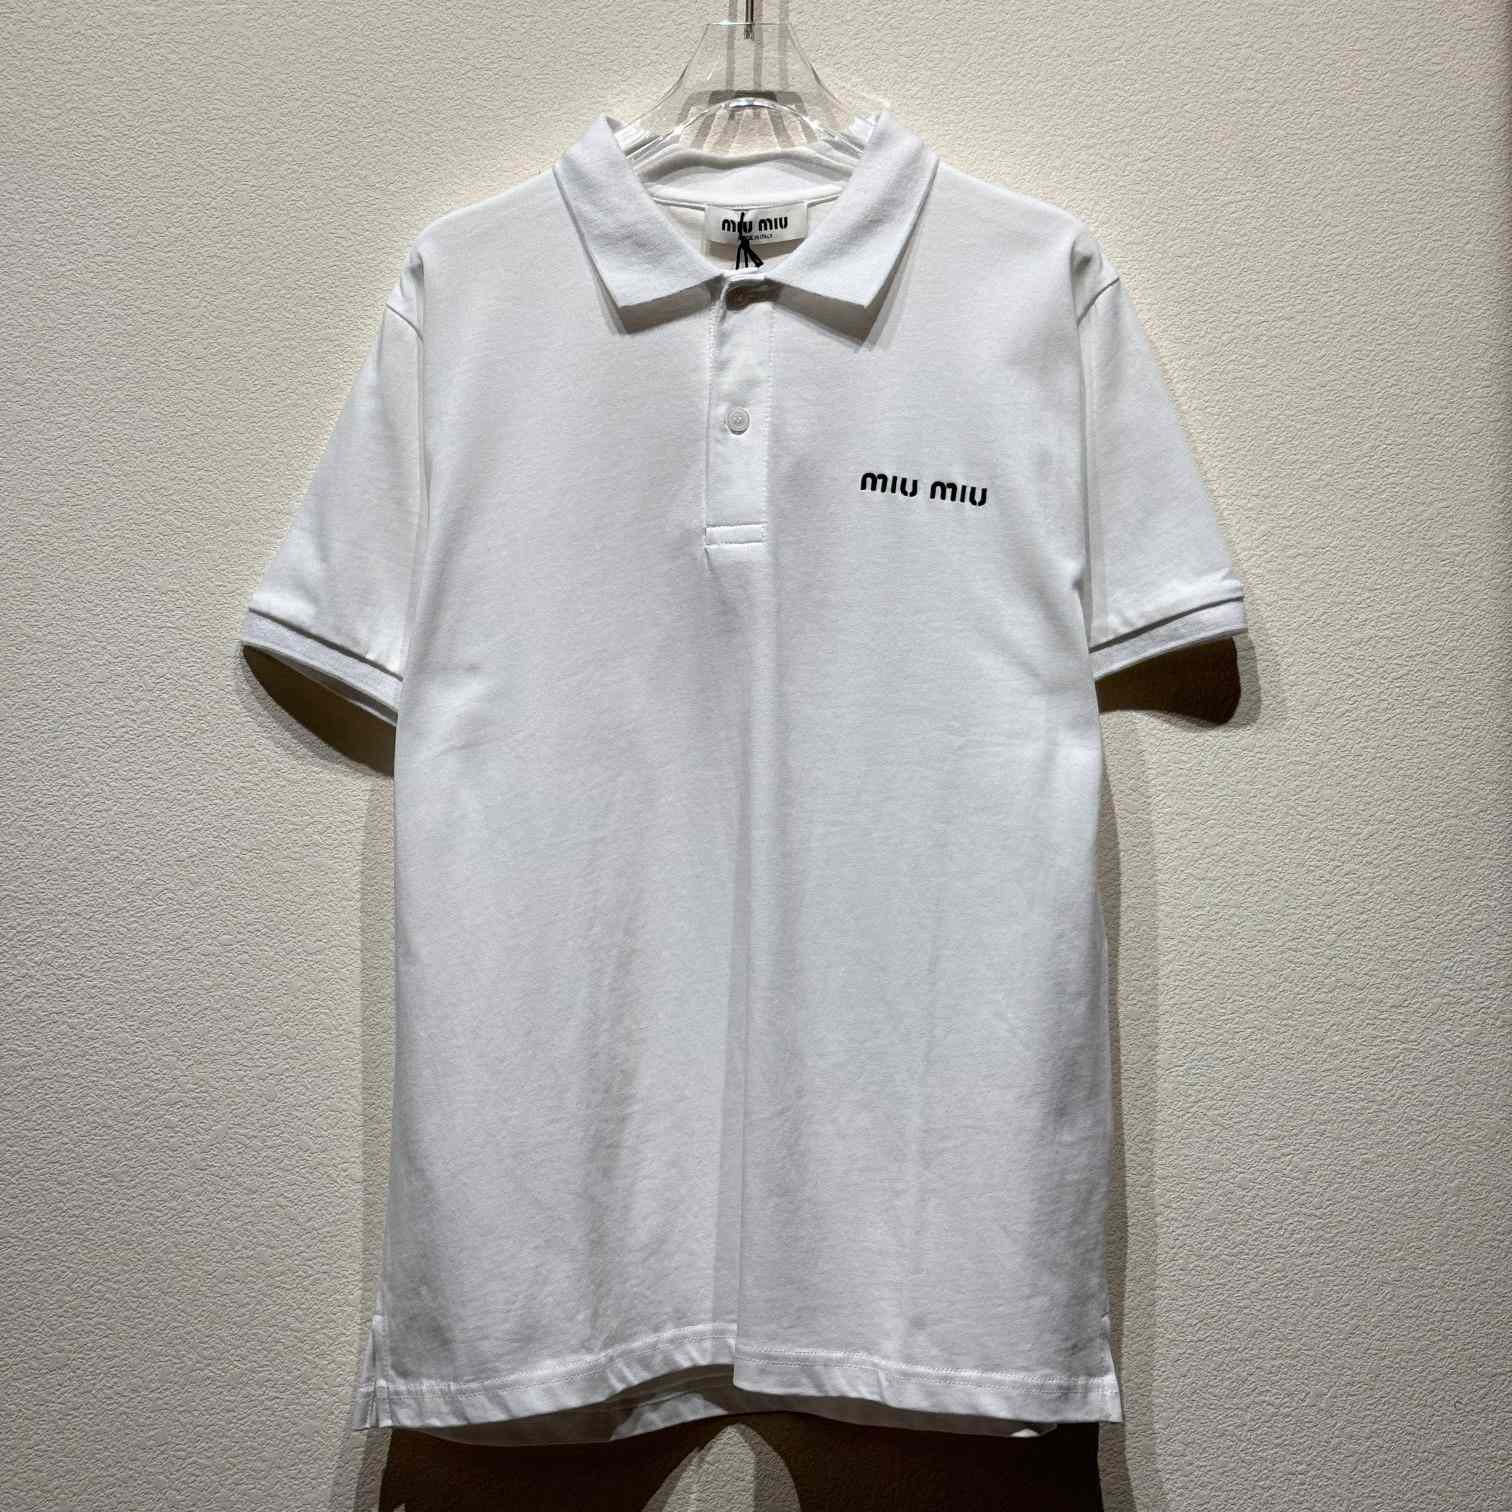 Miu Miu White Cotton Pique Polo Shirt - PerfectKickZ